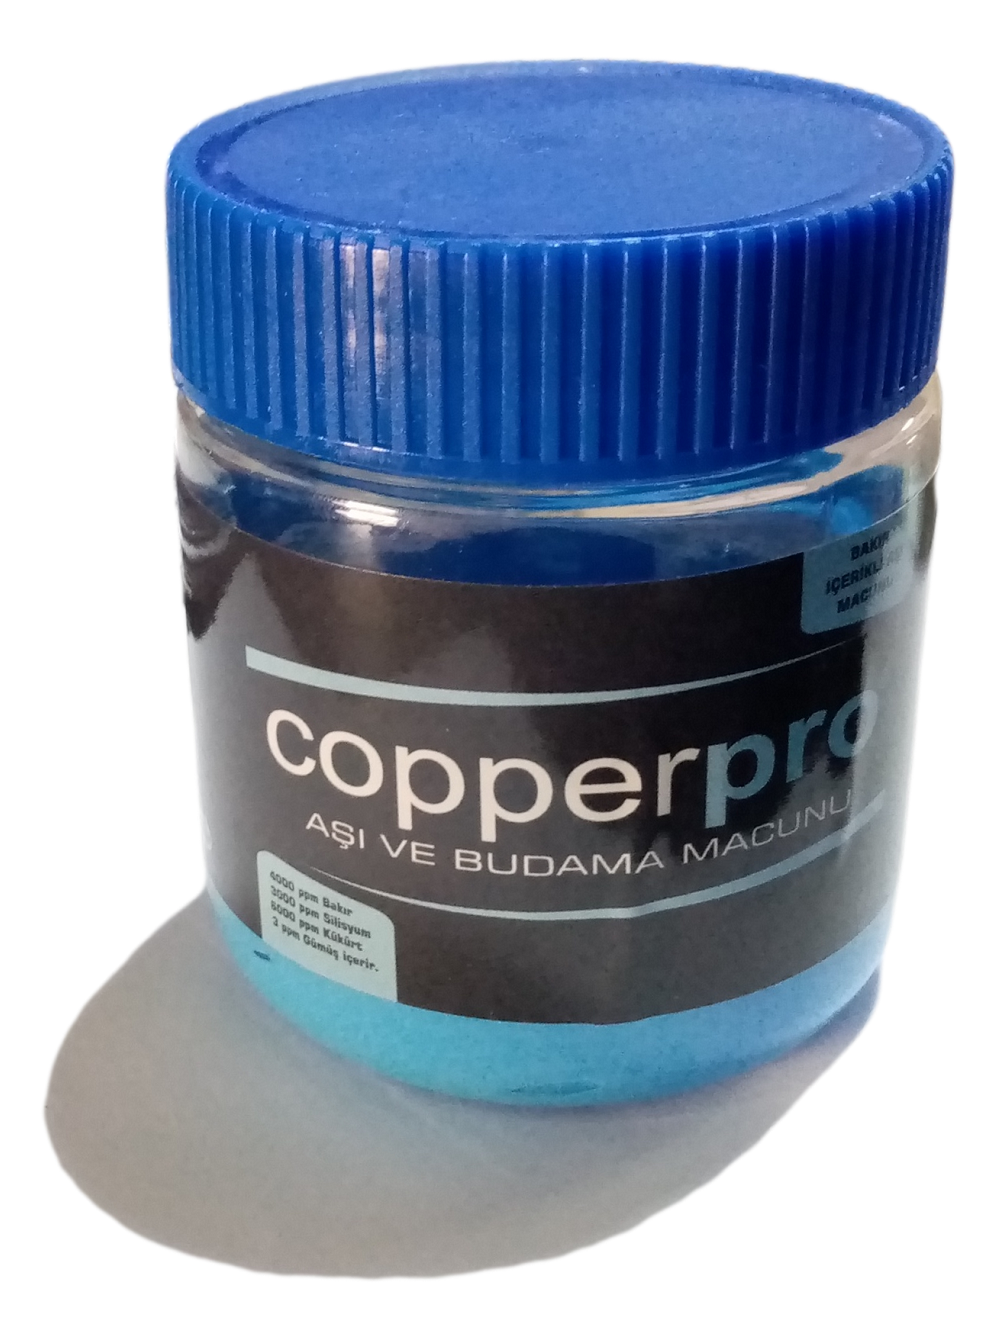 Copperpro Bakır İçerikli Aşı ve Budama Macunu 200 gr